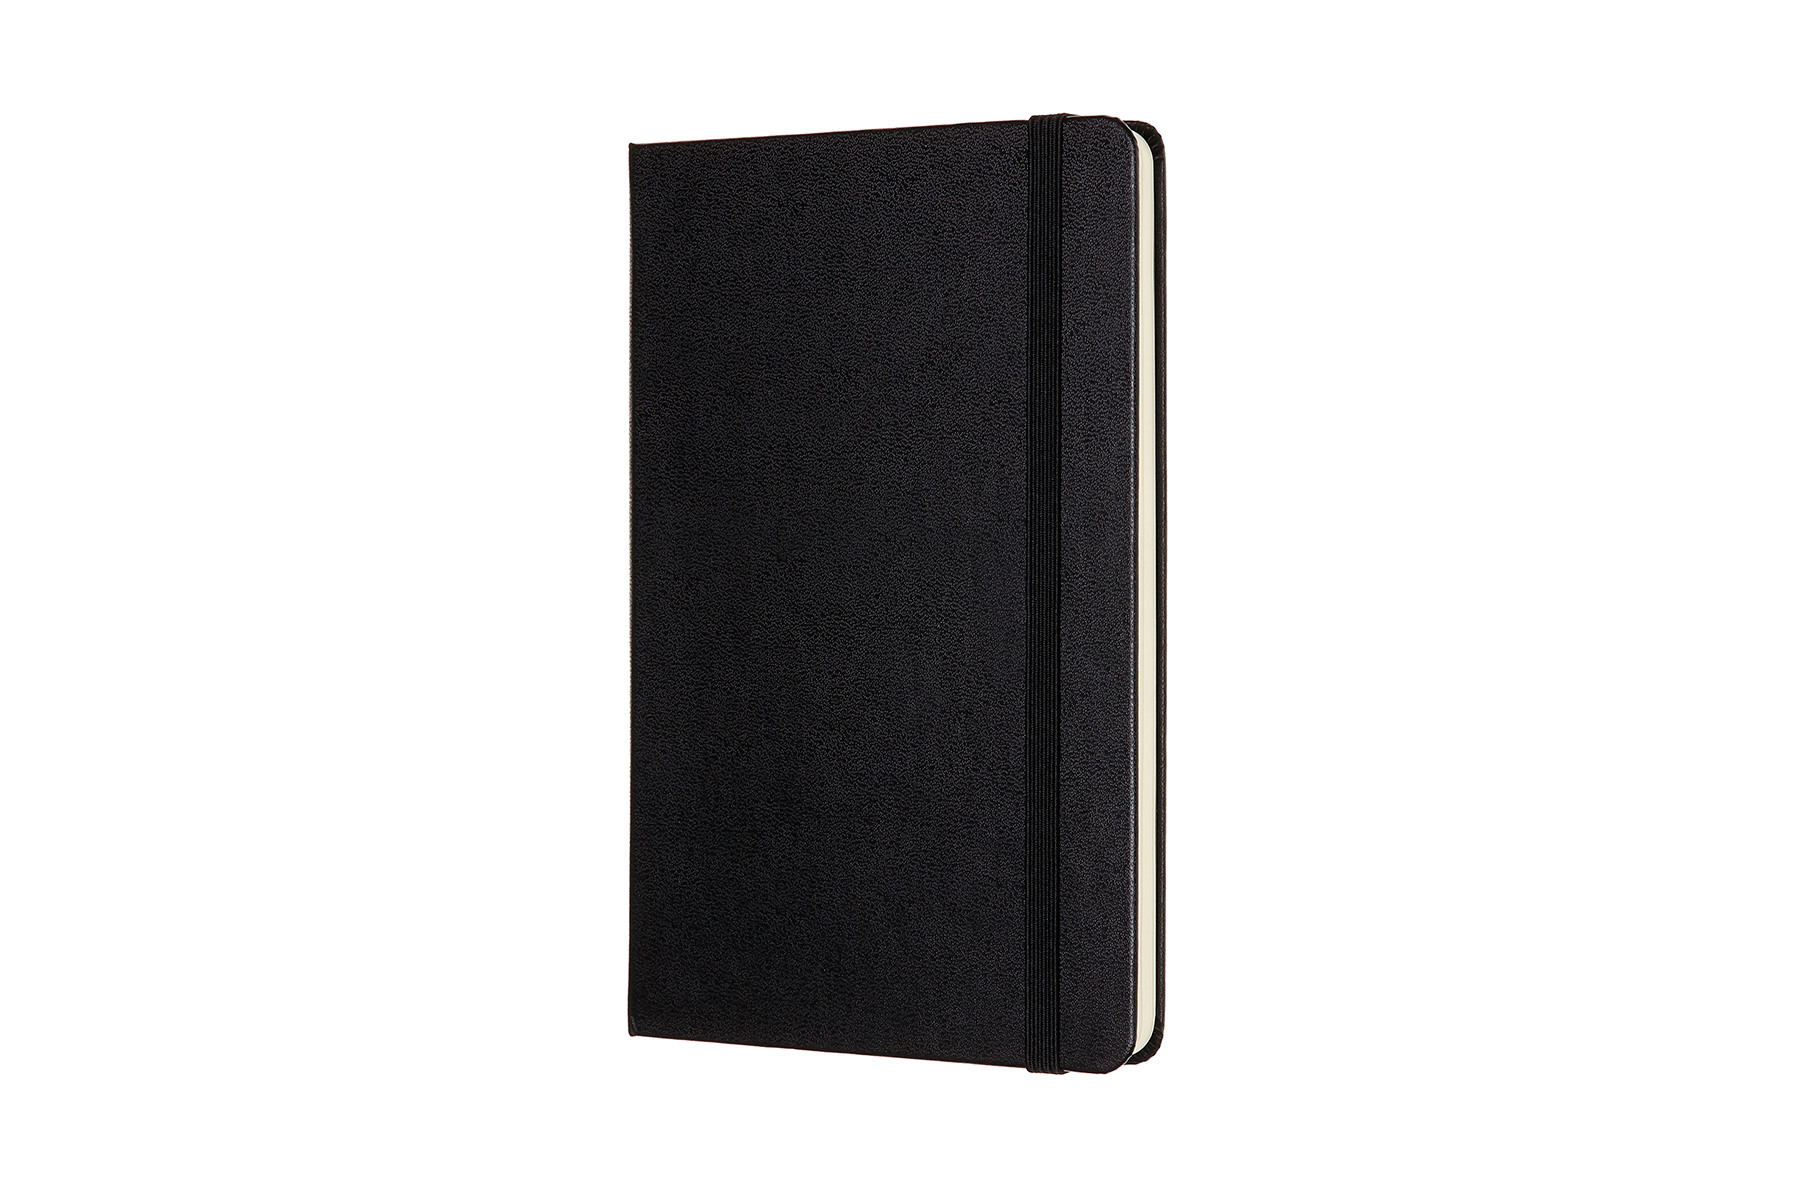 MOLESKINE Carnet Medium HC 18,2x11,8cm 626604 en blanc, noir, 208 pages